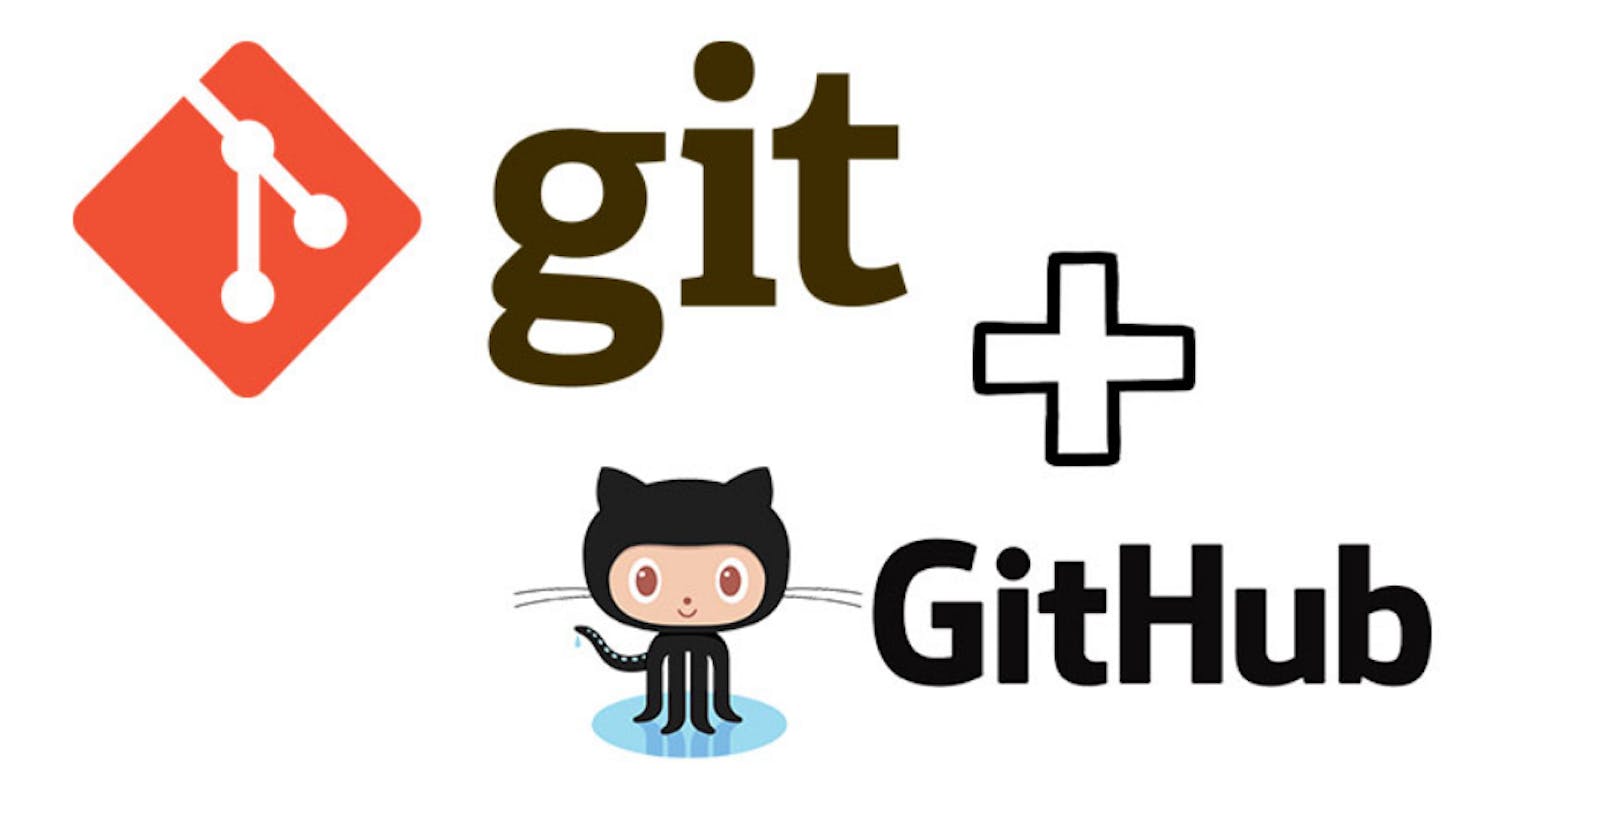 Basic Git & GitHub for DevOps 
Engineers